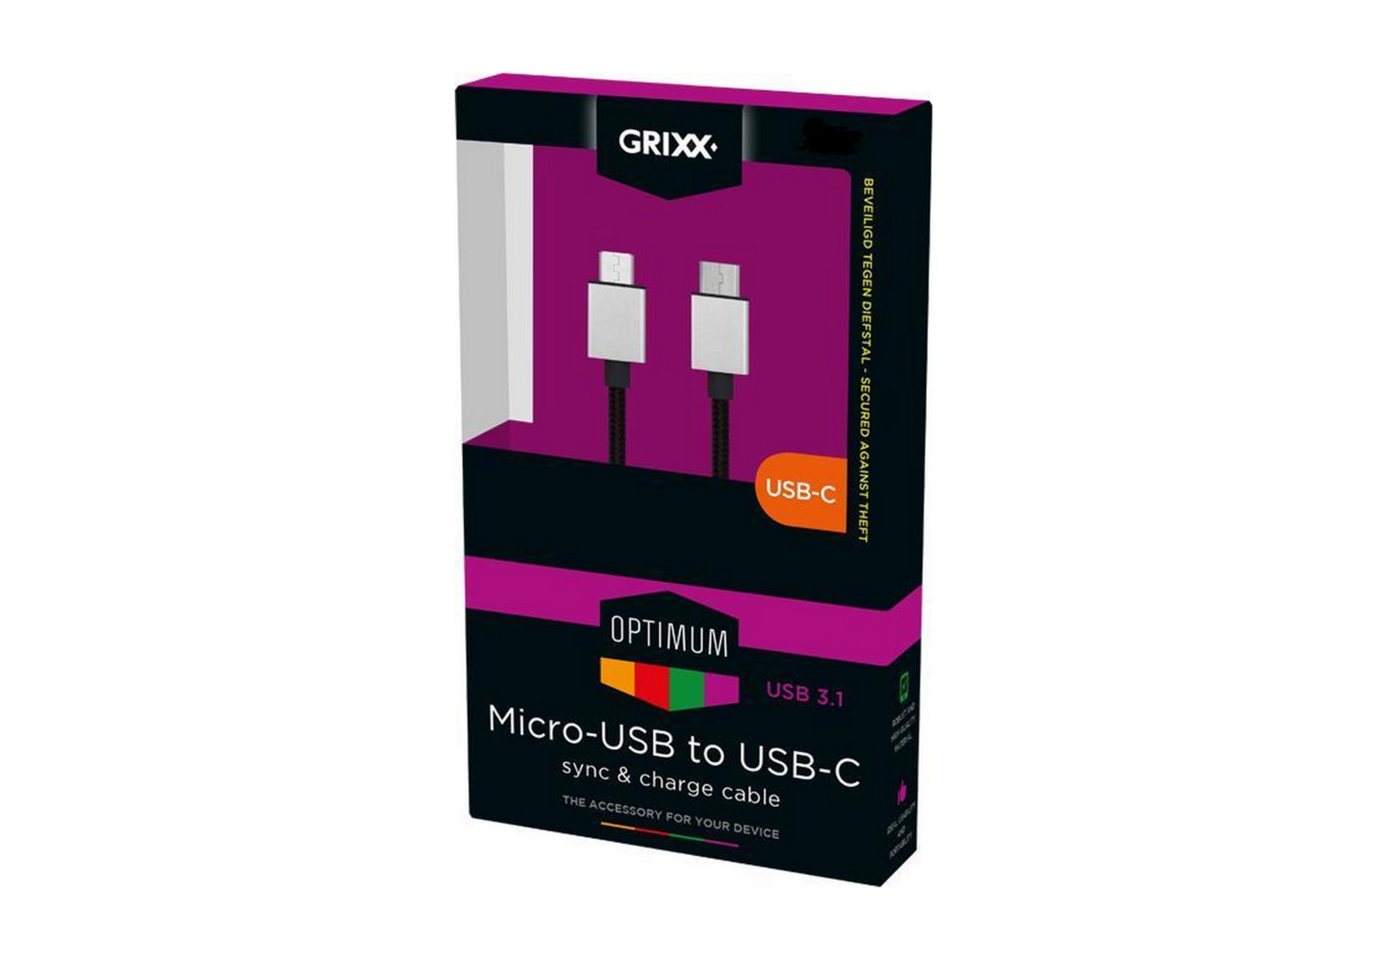 Grixx GROCACMUSBFBK03 USB-Kabel, Micro-USB, USB 3.0 Typ A (300 cm), USB 3.1, bis zu 480 Mbit/s, 3.0 Meter, Nylonmantel, Schwarz von Grixx